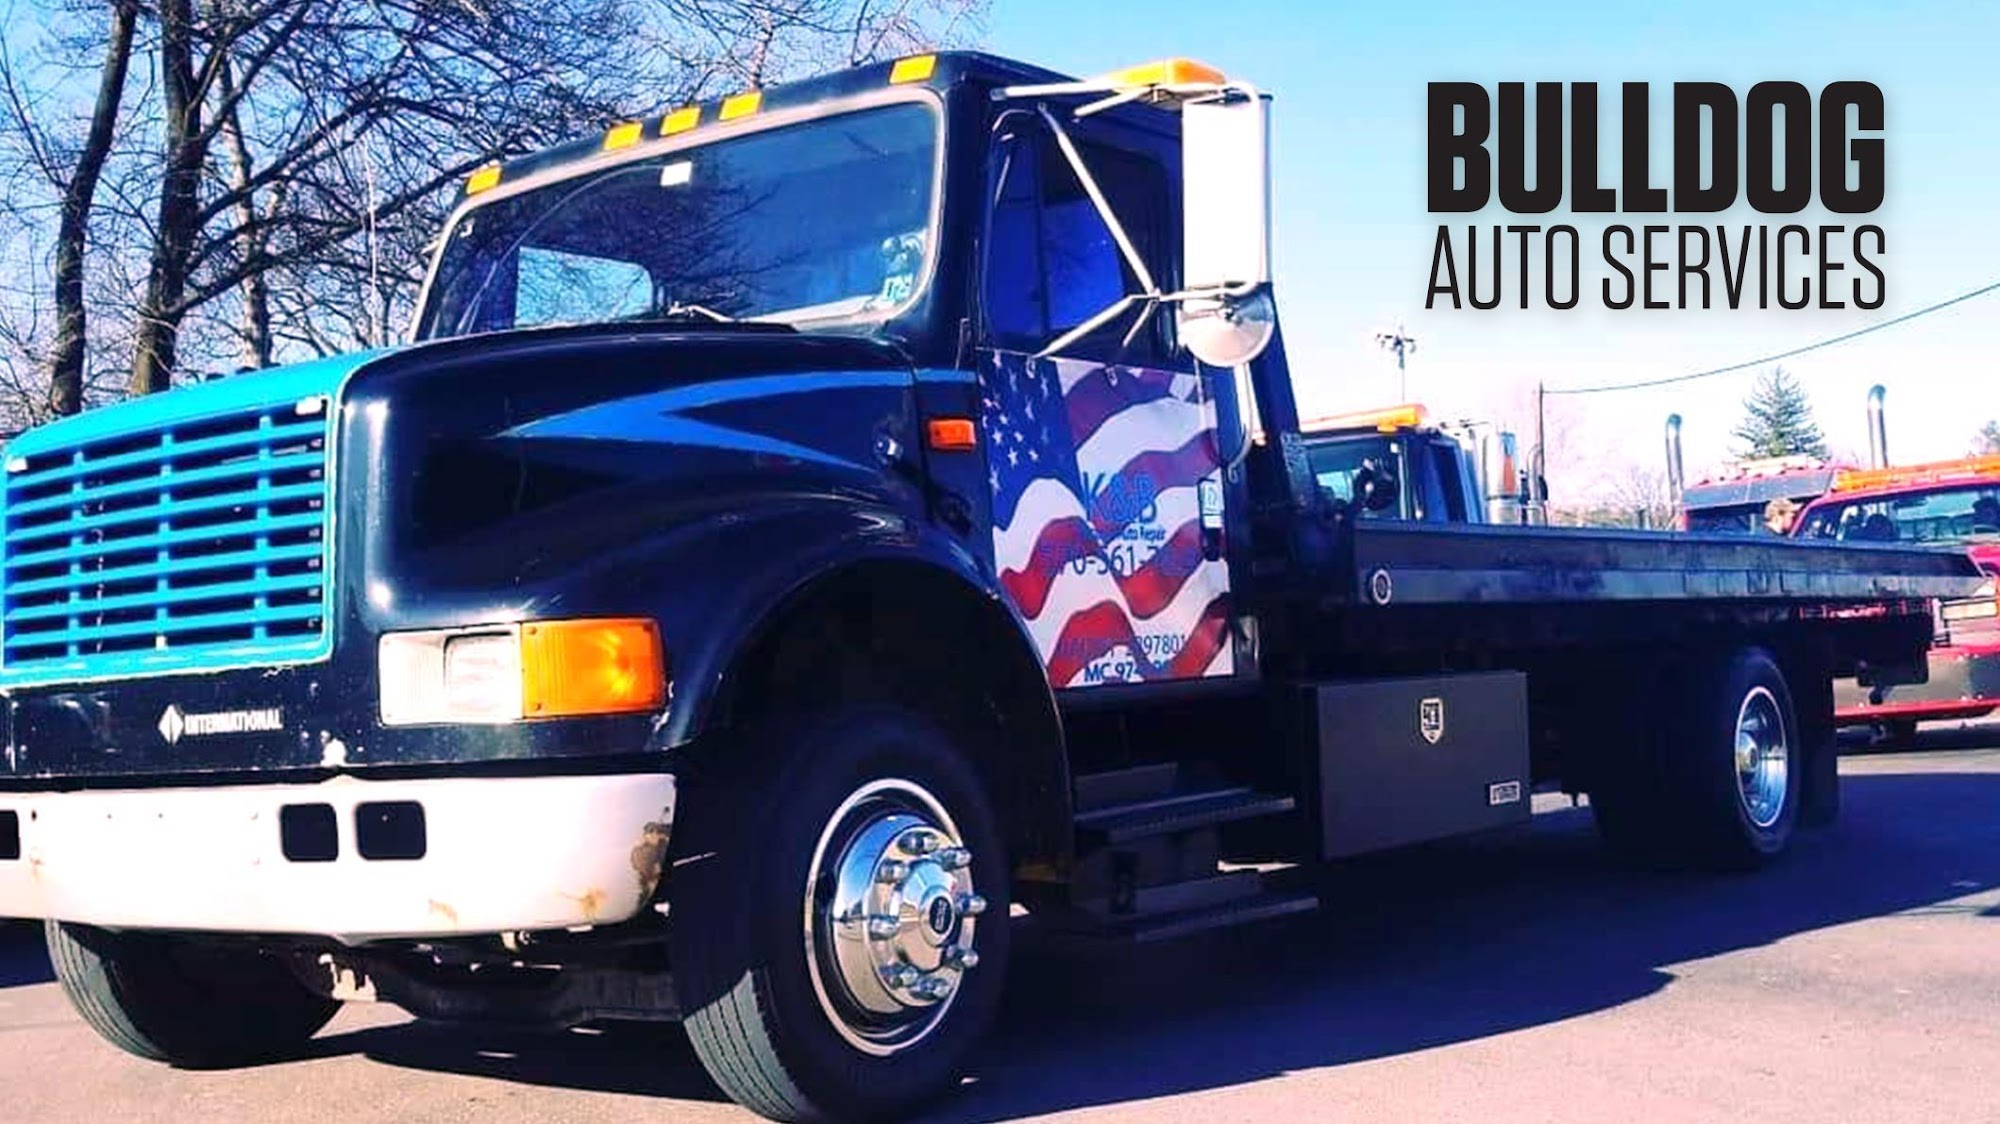 Bulldog Auto Services